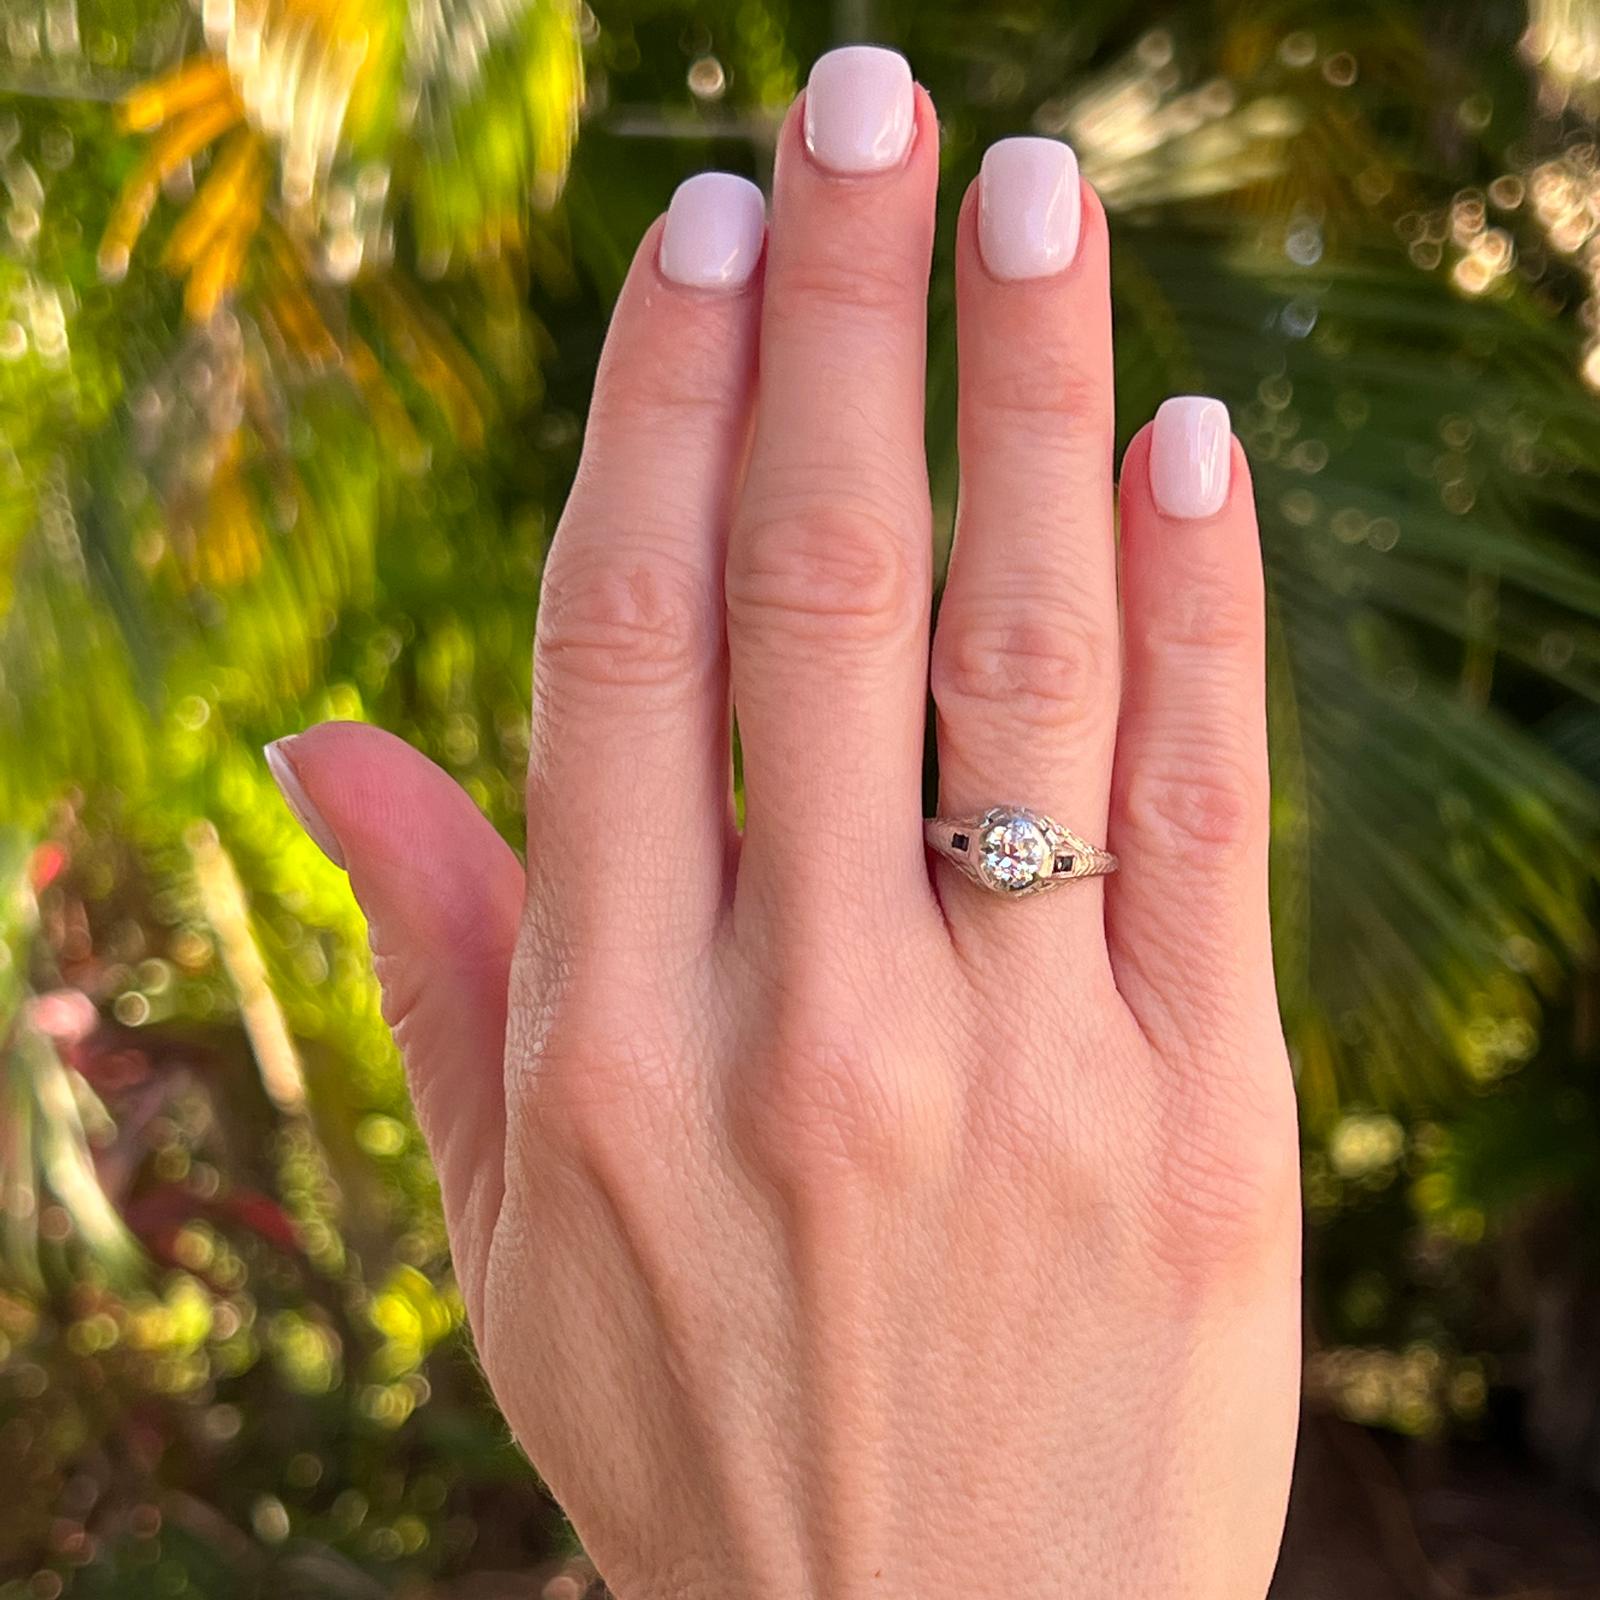 Original Art Deco Diamant-Verlobungsring, handgefertigt in Platin. Der Ring ist mit einem etwa 0,70 Karat schweren Diamanten im alten europäischen Schliff mit der Farbe H und der Reinheit VS versehen. Der Diamant ist von 4 blauen Saphiren umgeben.